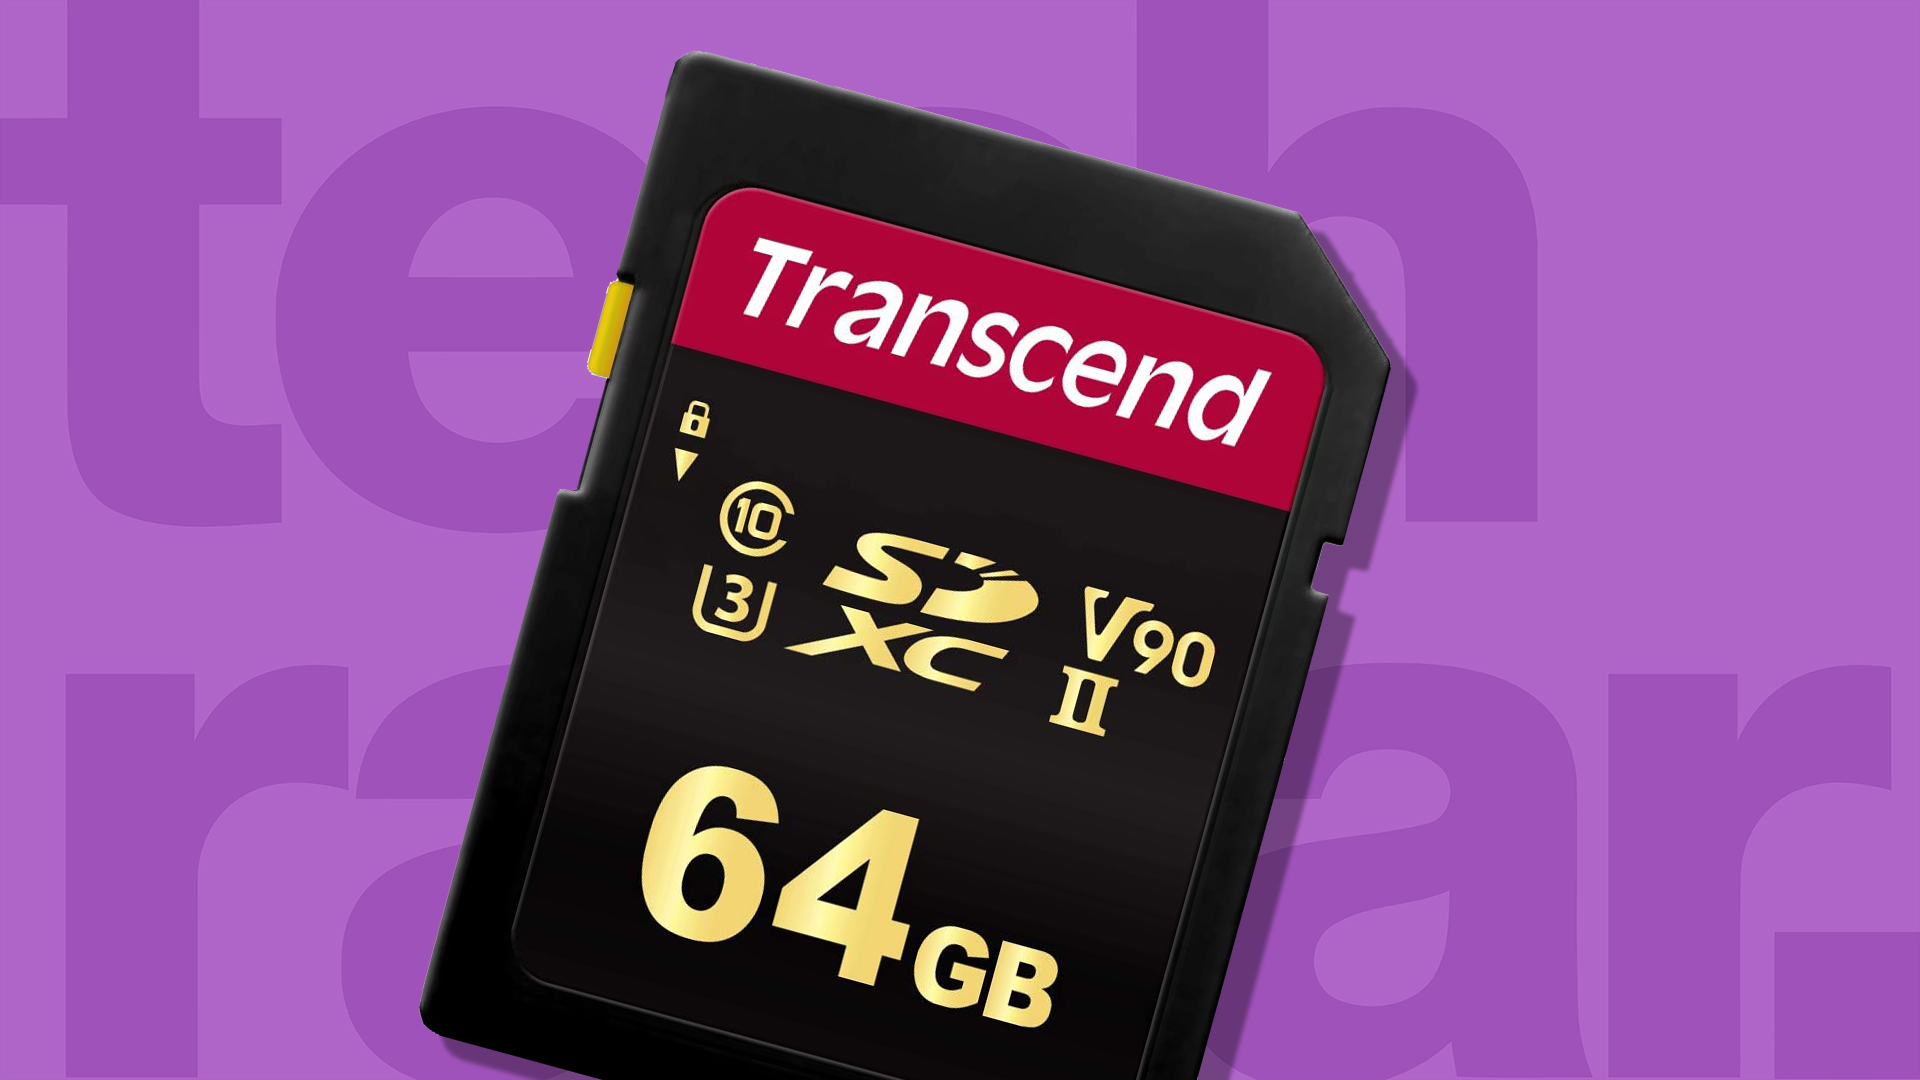  Cartes mémoire : Électronique : Micro SD Cards, SD & SDHC  Cards, Compact Flash Cards, Memory Sticks et plus